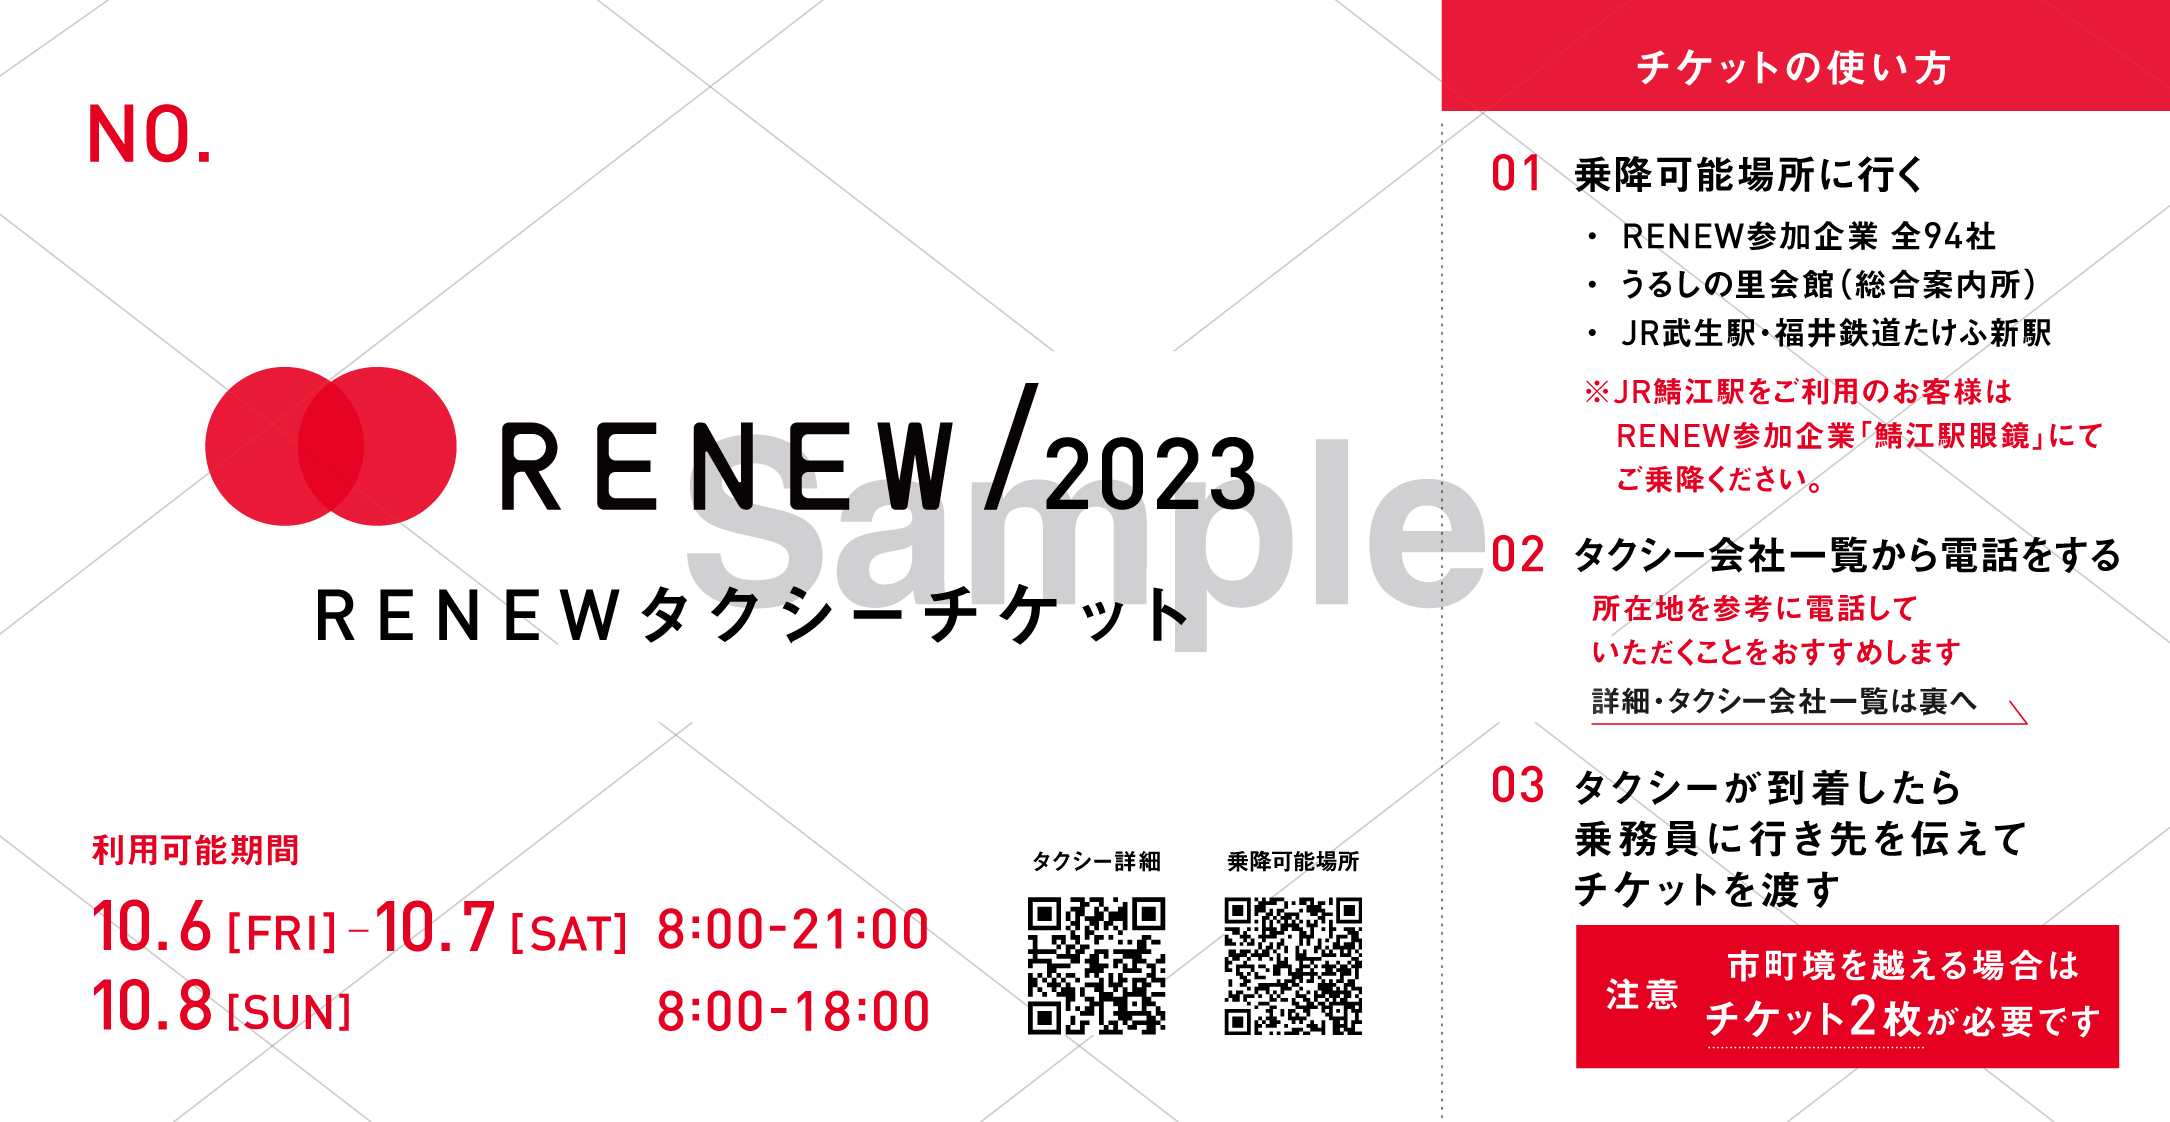 RENEWタクシーチケット【RENEW/2023】 | RENEW 2023